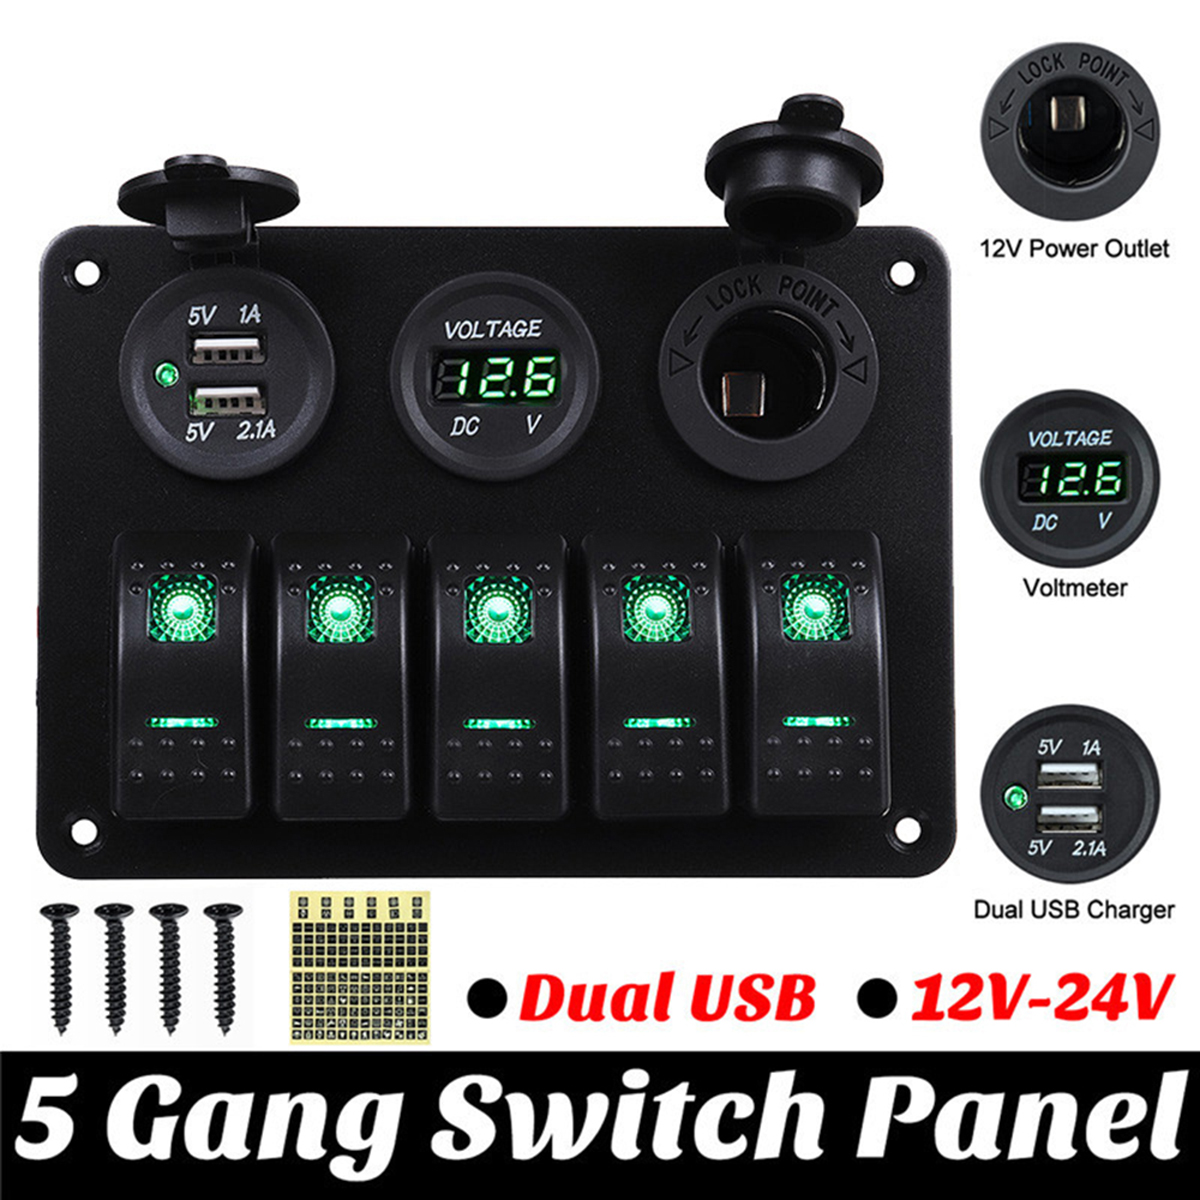 5 Gang LED Rocker Switch Control Panel 12V&24V Car Boat Marine 2 USB Voltmeter